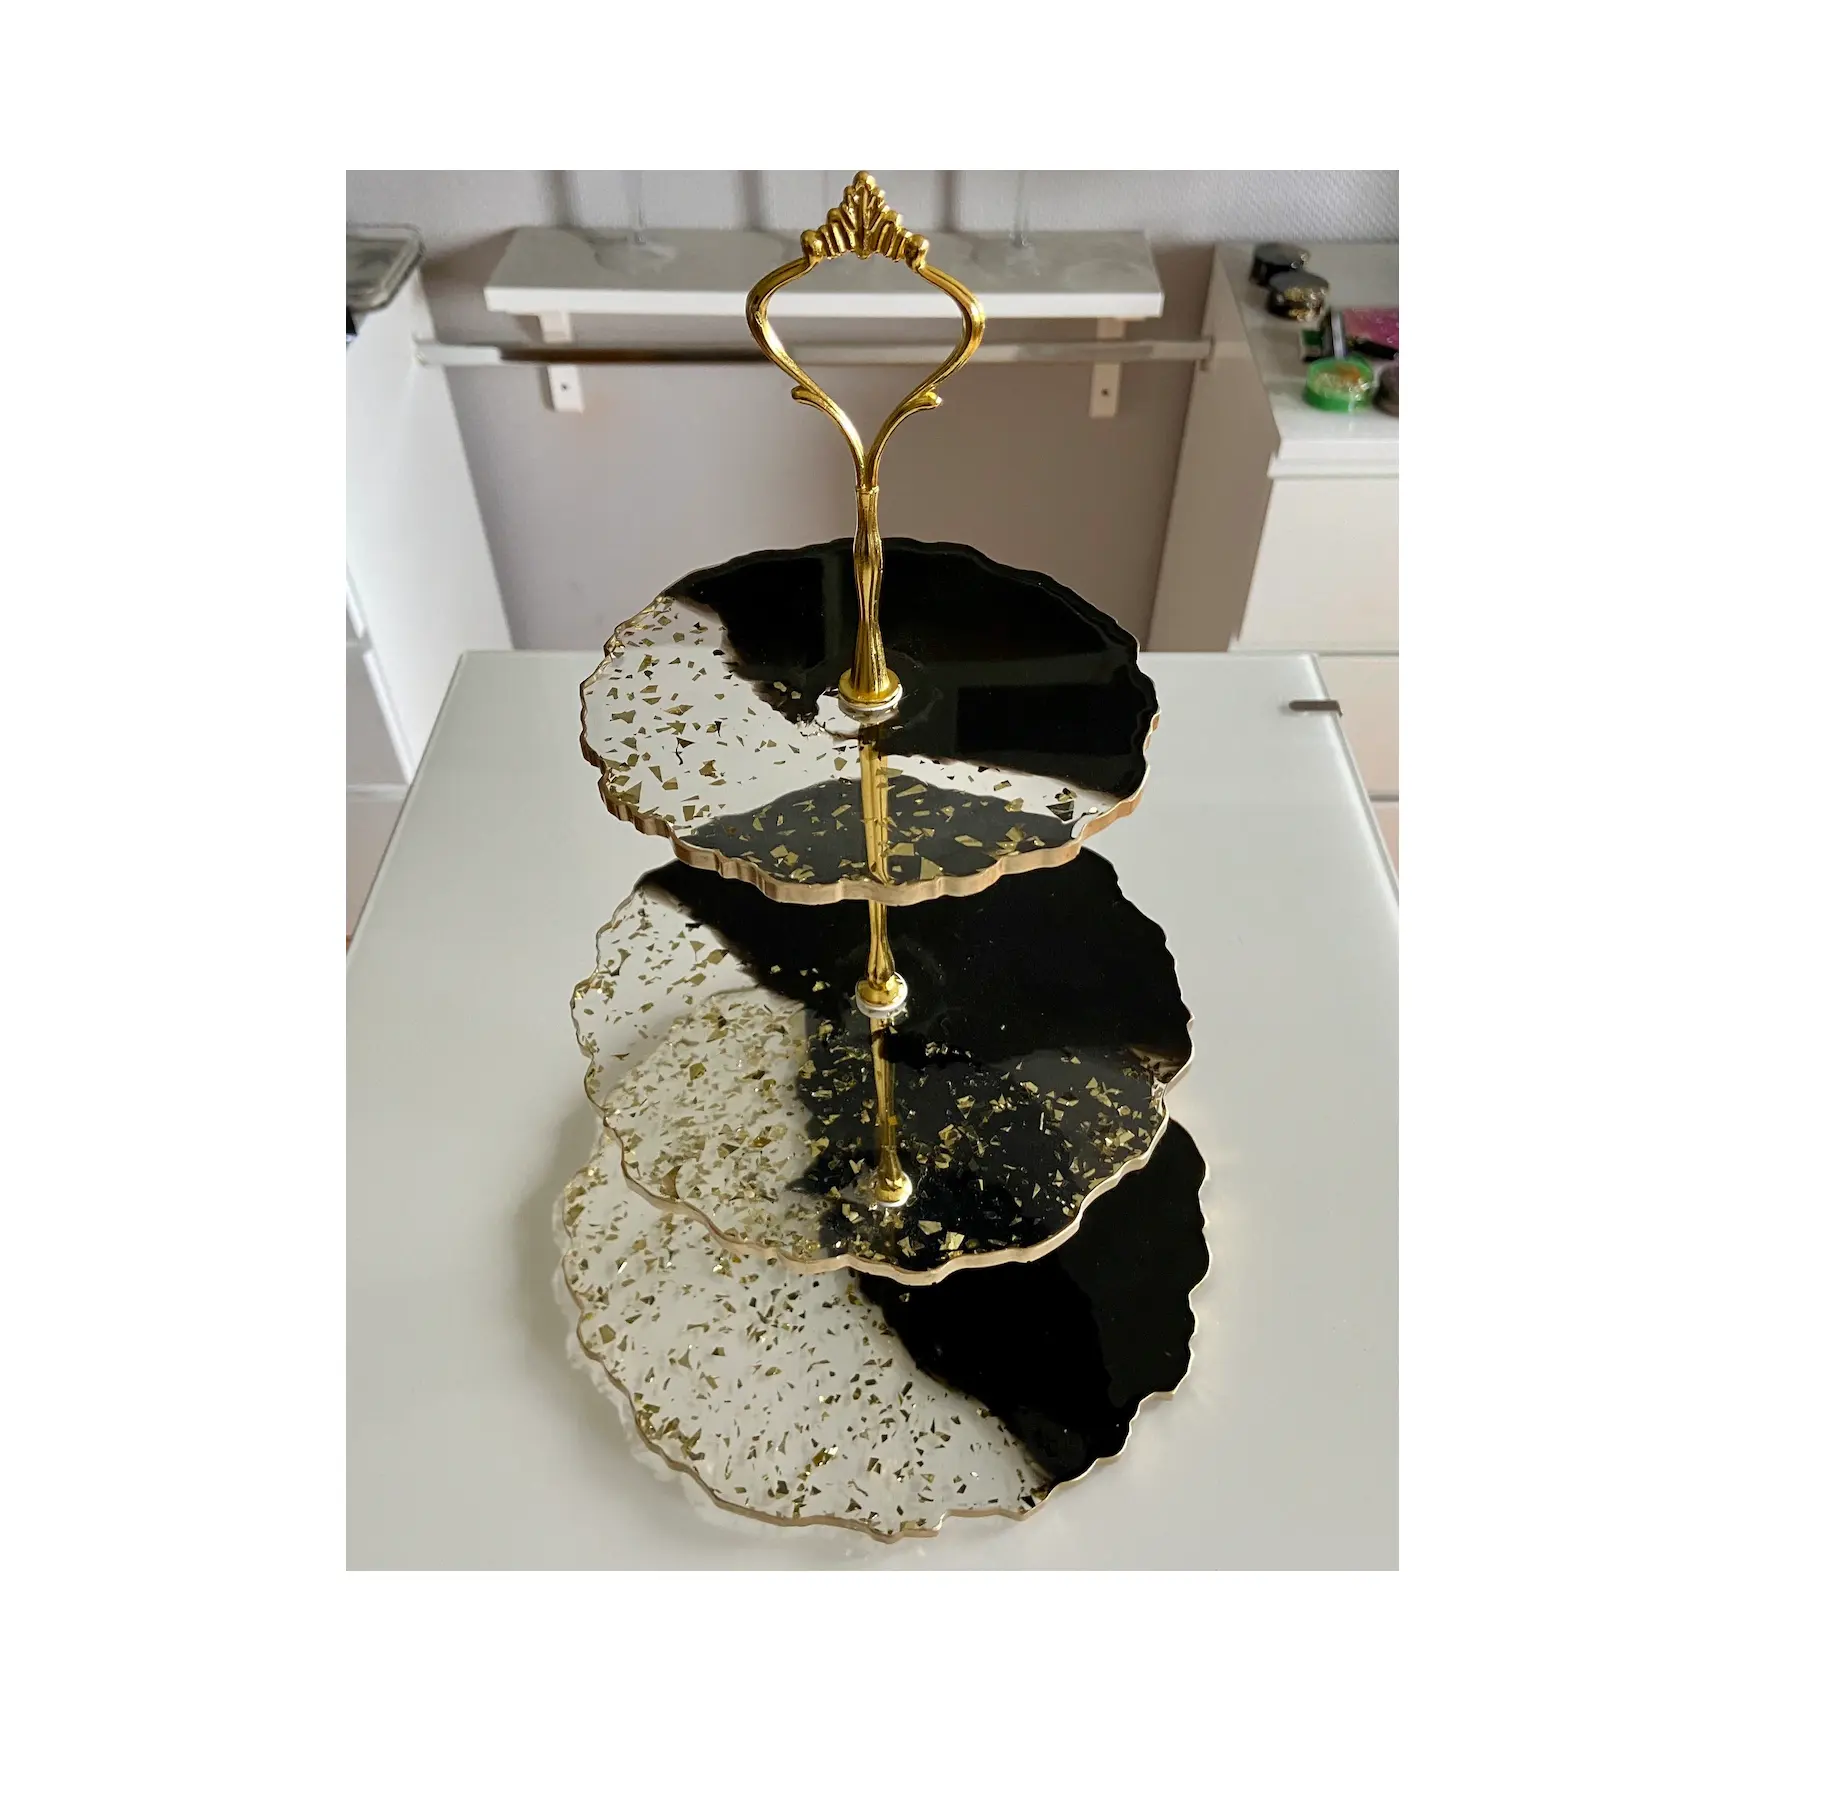 काले और सफेद रेज़िन केक सर्विंग उपयोग स्टैंड प्लैटर सर्वर गोल्डन प्लेटिंग रिम के साथ 3 टायर केक सर्विंग उपयोग स्टैंड भारत में निर्मित